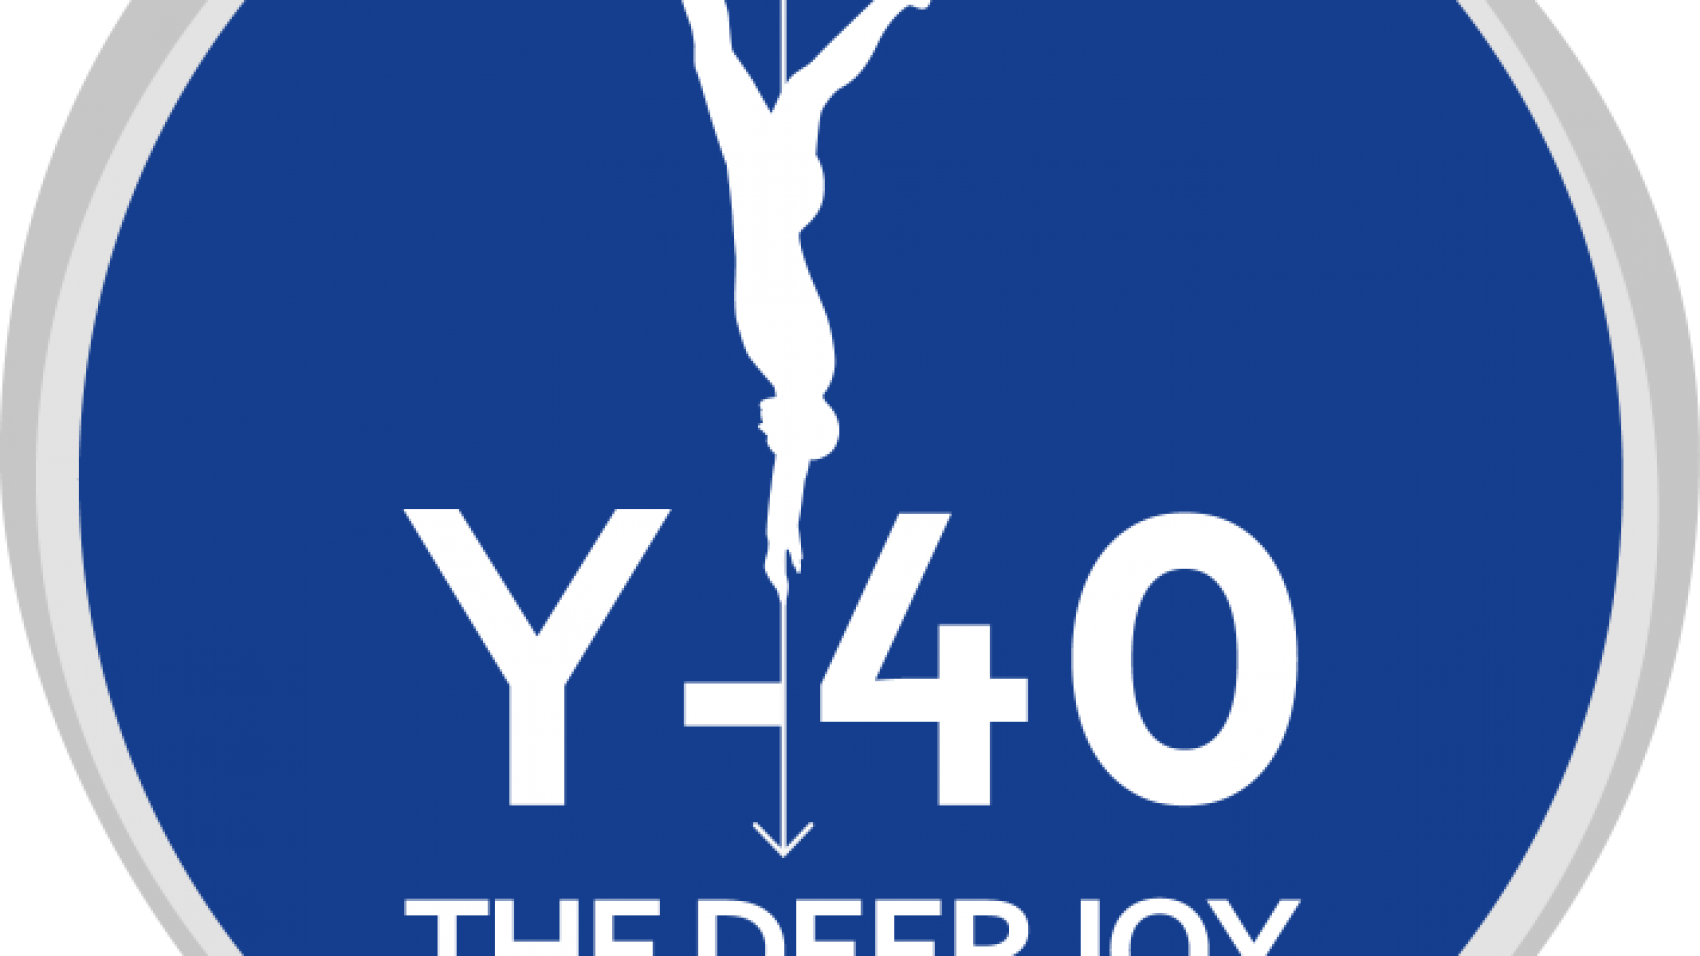 Y-40-Logo-Ufficiale